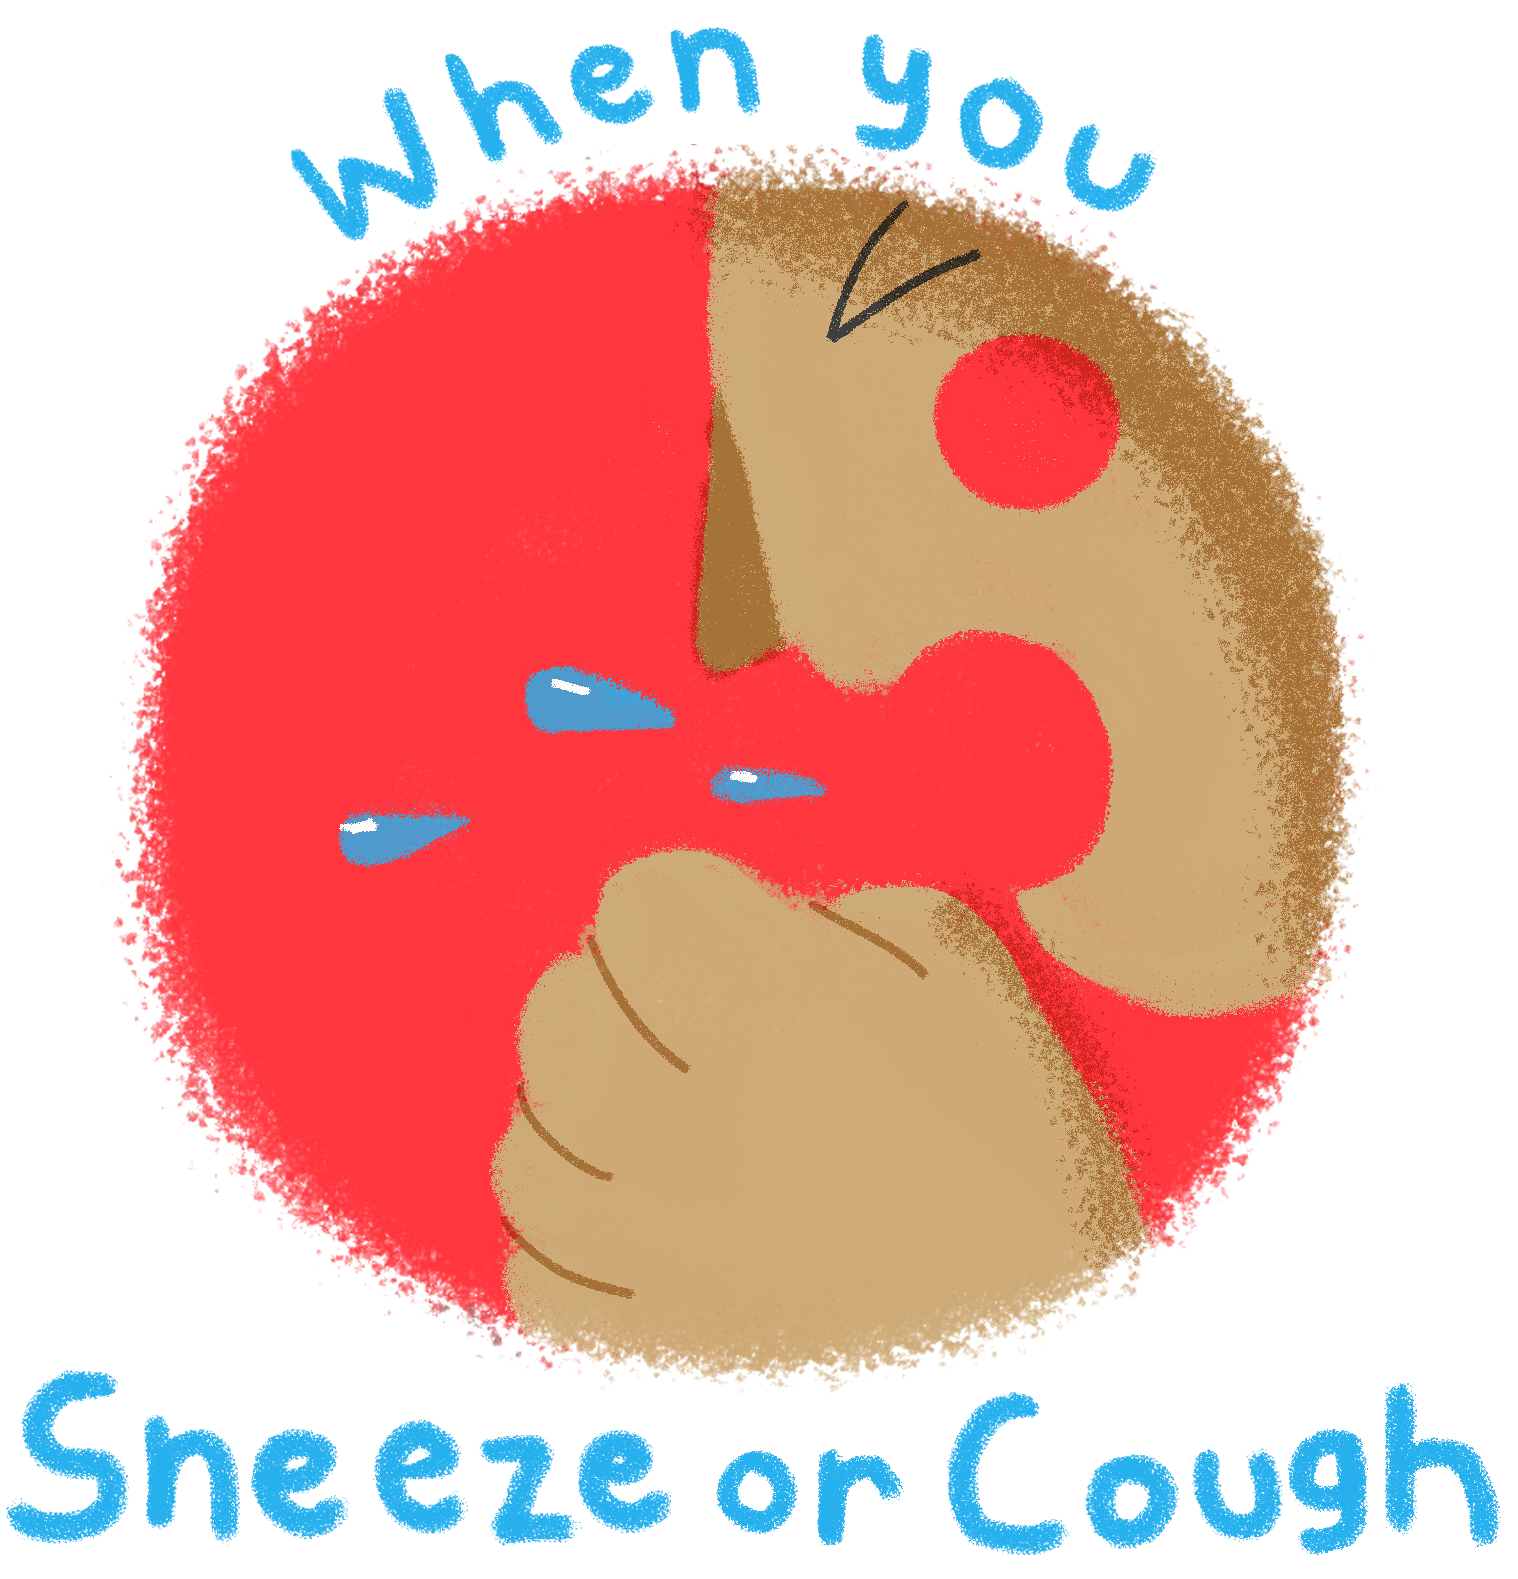 cough etiquette artclip